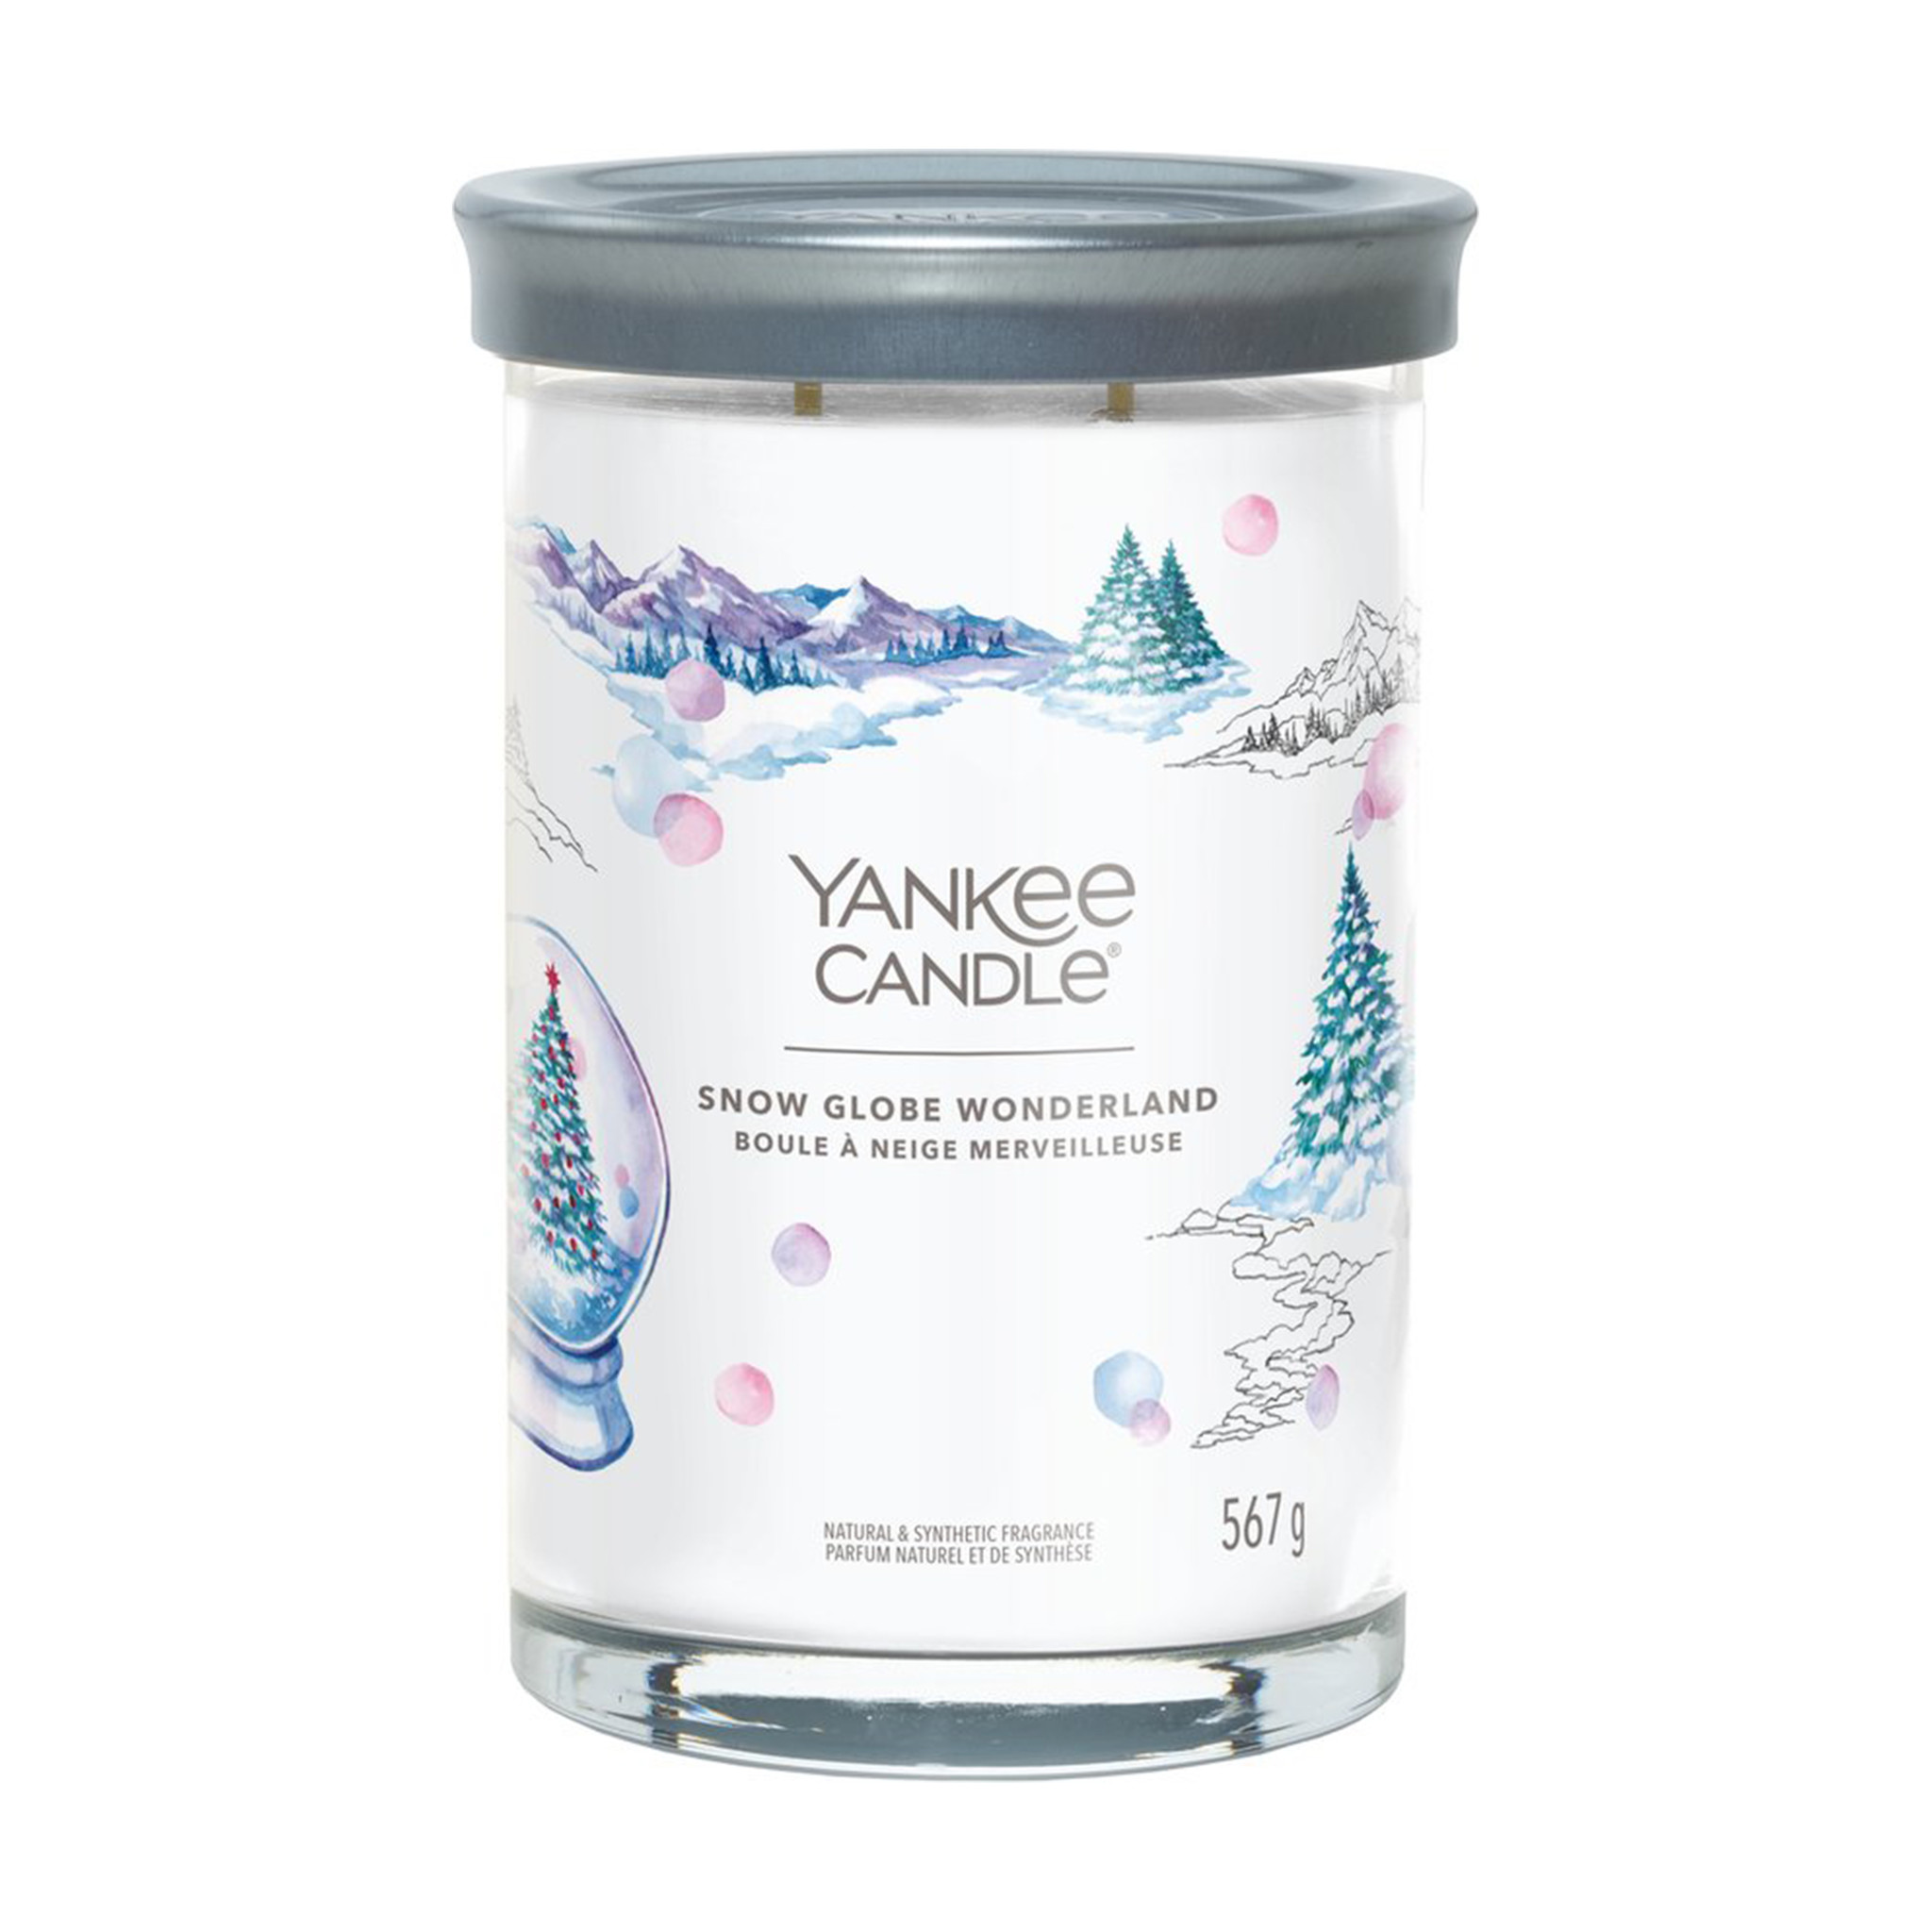 Yankee Candle - Snow Globe Wonderland Signature Large Tumbler